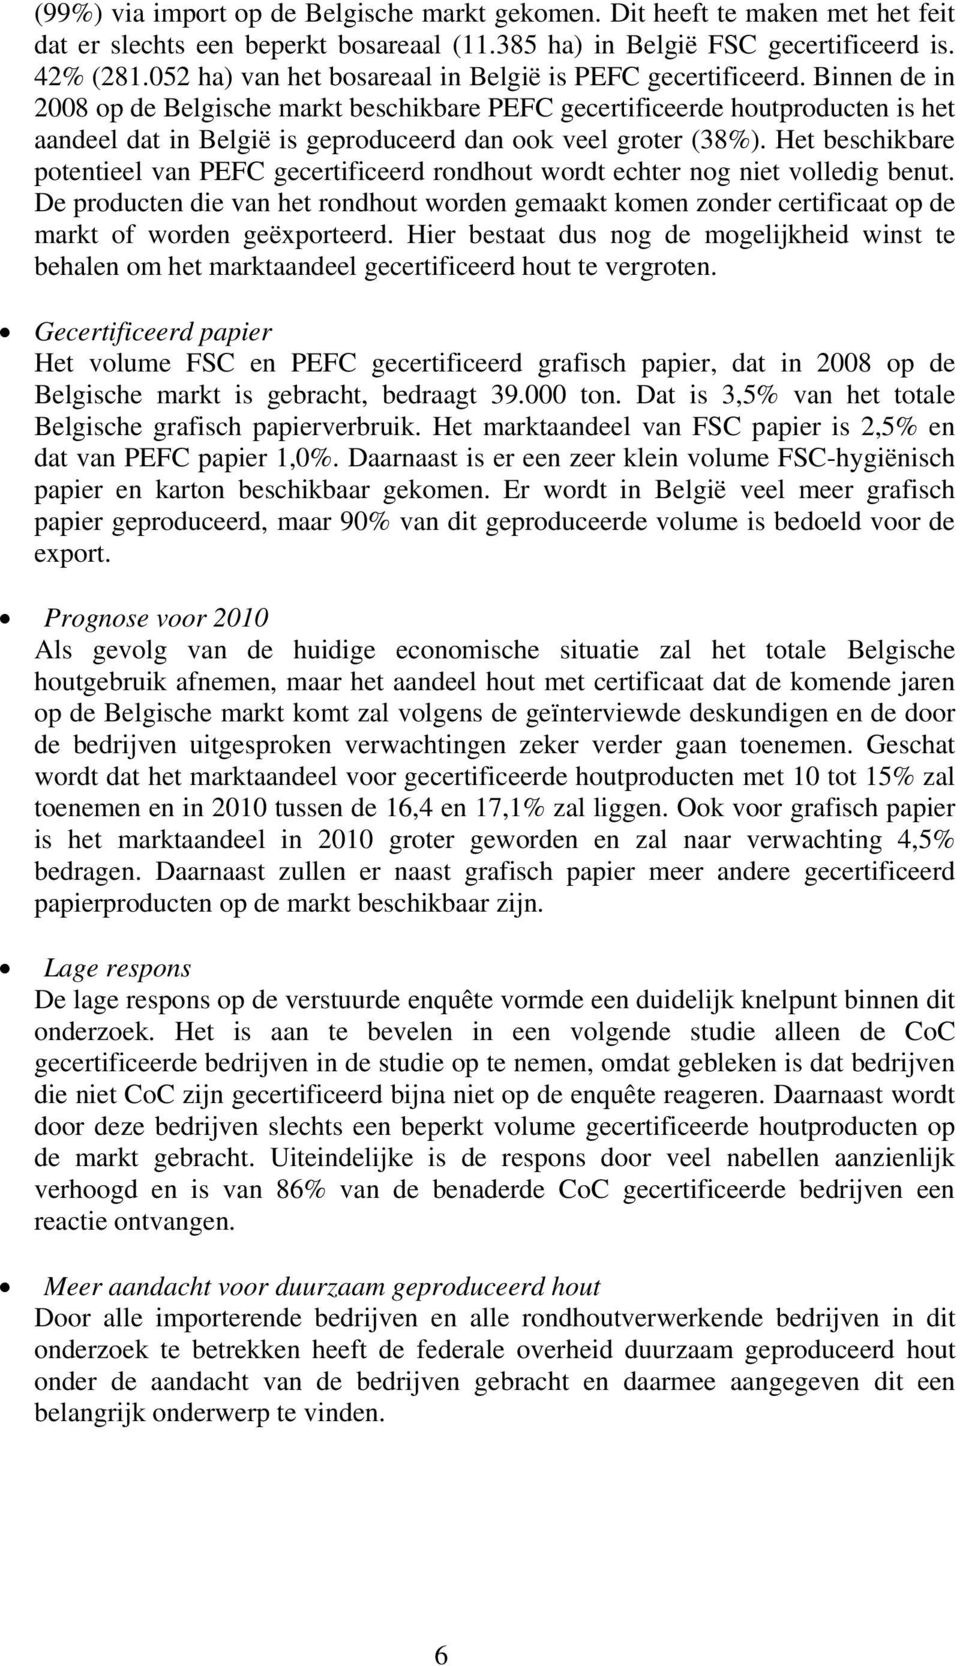 Binnen de in 2008 op de Belgische markt beschikbare PEFC gecertificeerde houtproducten is het aandeel dat in België is geproduceerd dan ook veel groter (38%).